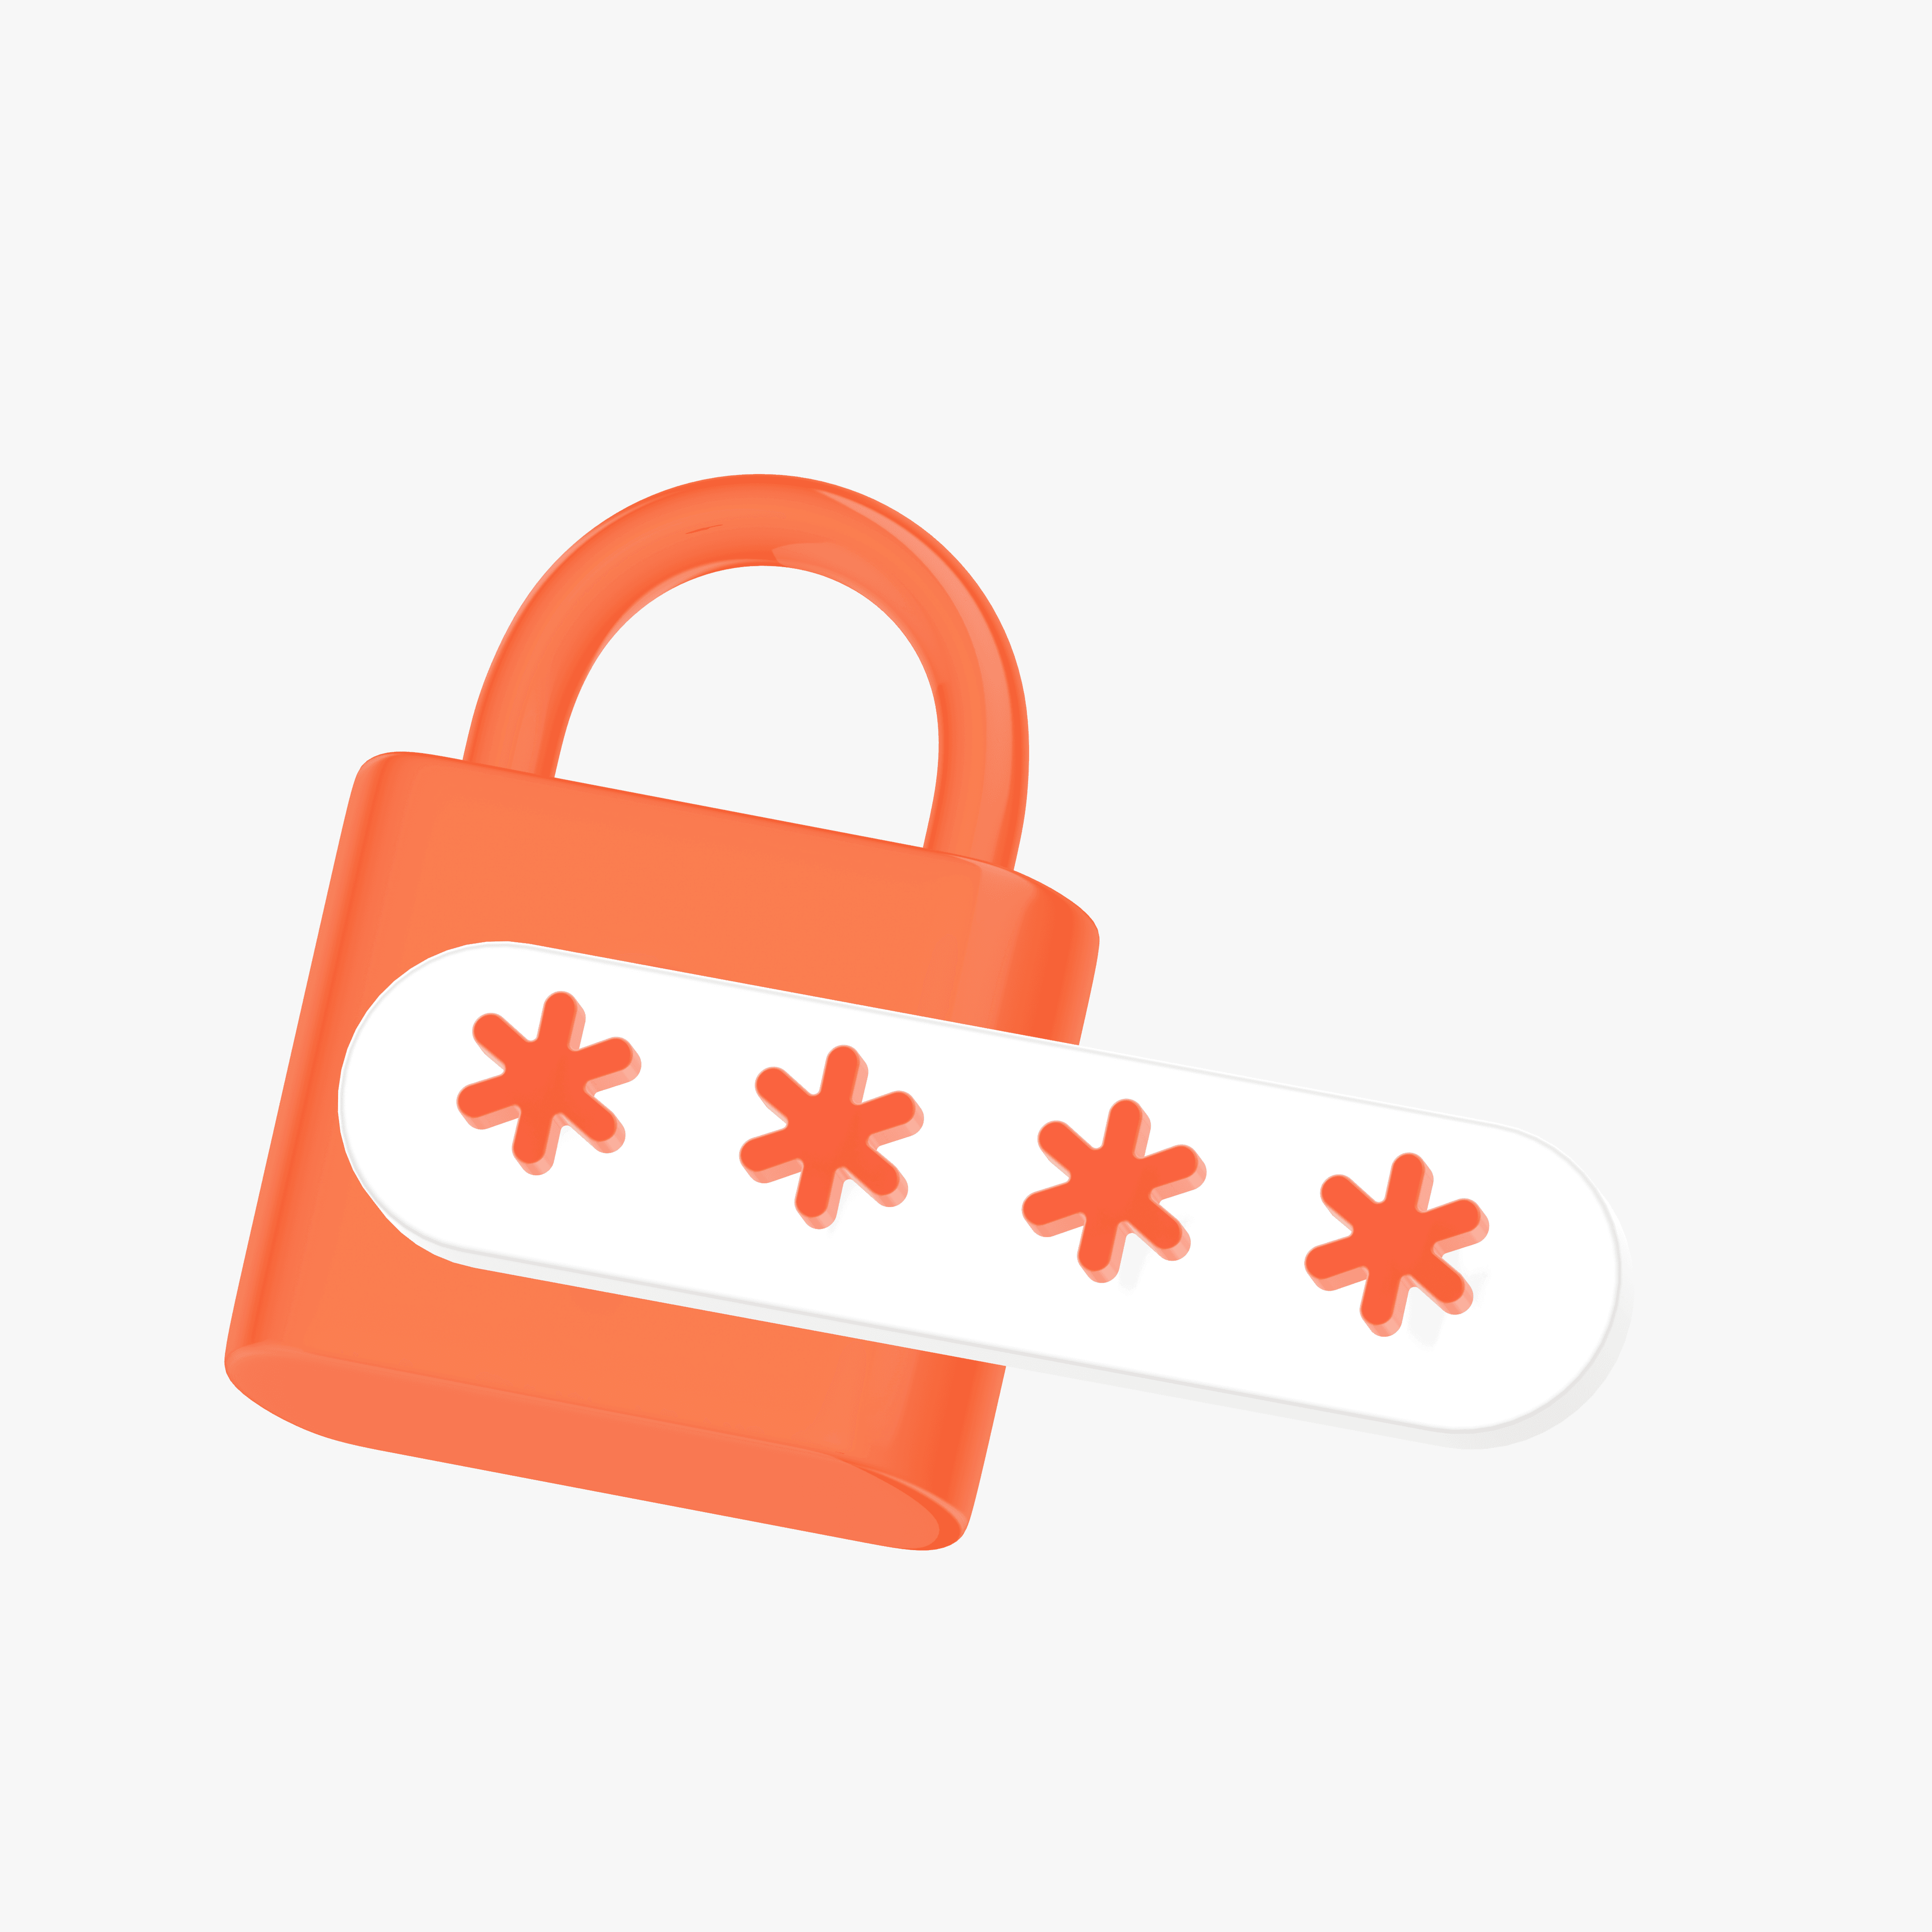 Lock with password